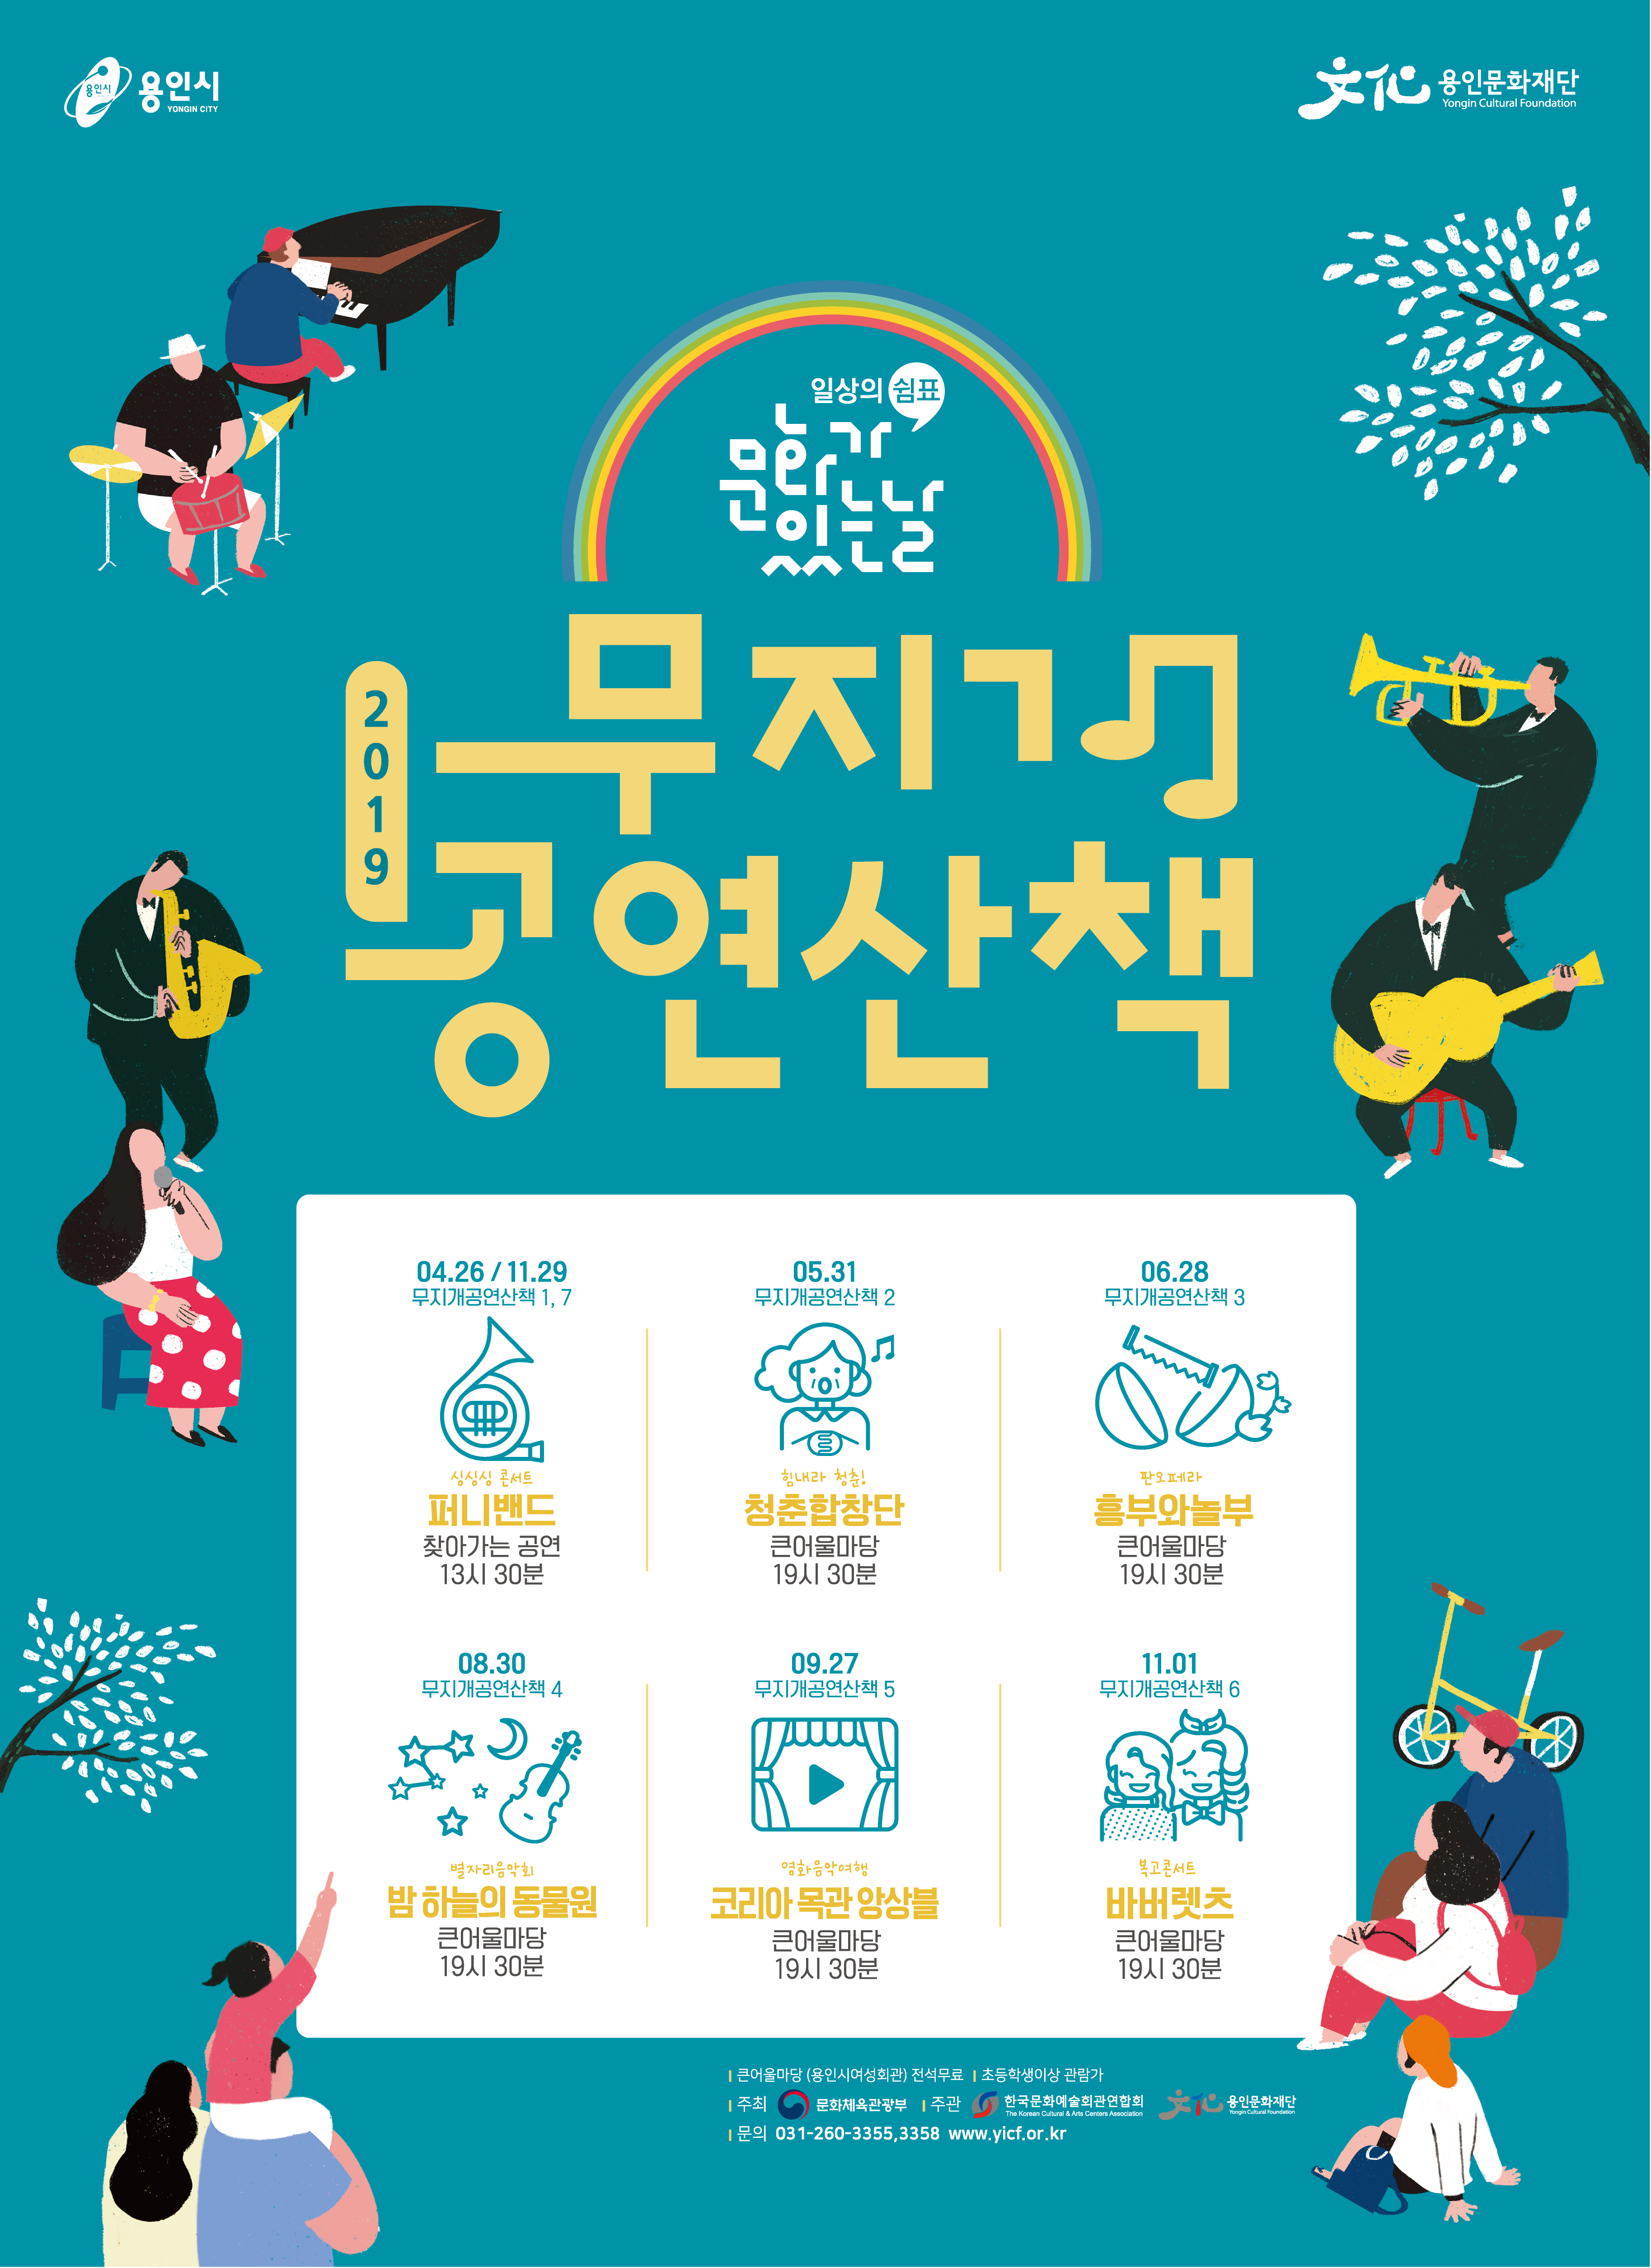 2019문화가있는날 무지개공연산책7 <싱싱싱콘서트:퍼니밴드> 홍보포스터